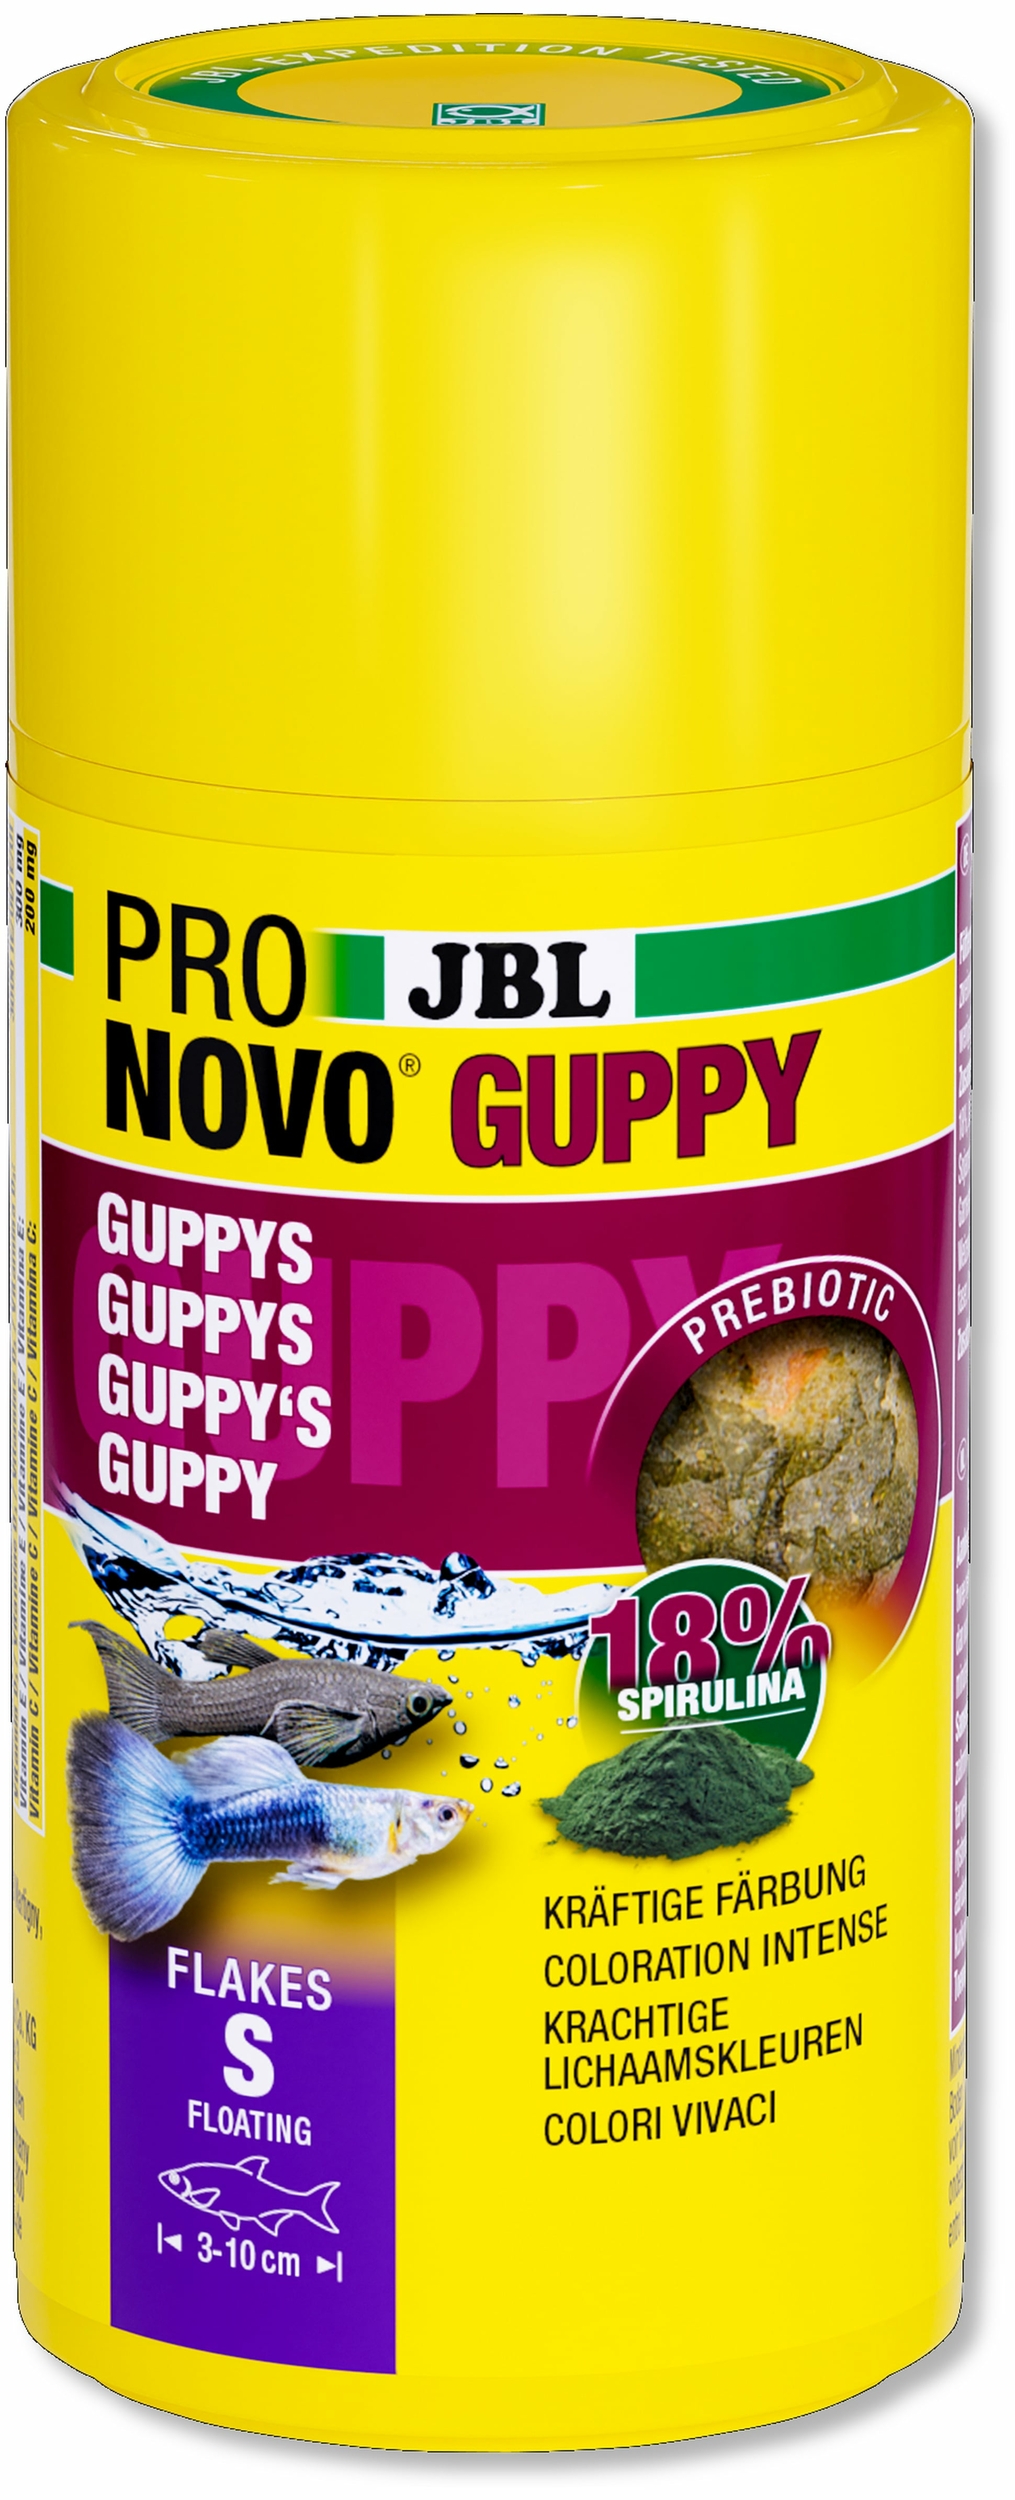 JBL ProNovo Guppy Flakes S 100 ml nourriture de base en flocons pour guppys et autres poissons ovovivipares de 3 à 10 cm